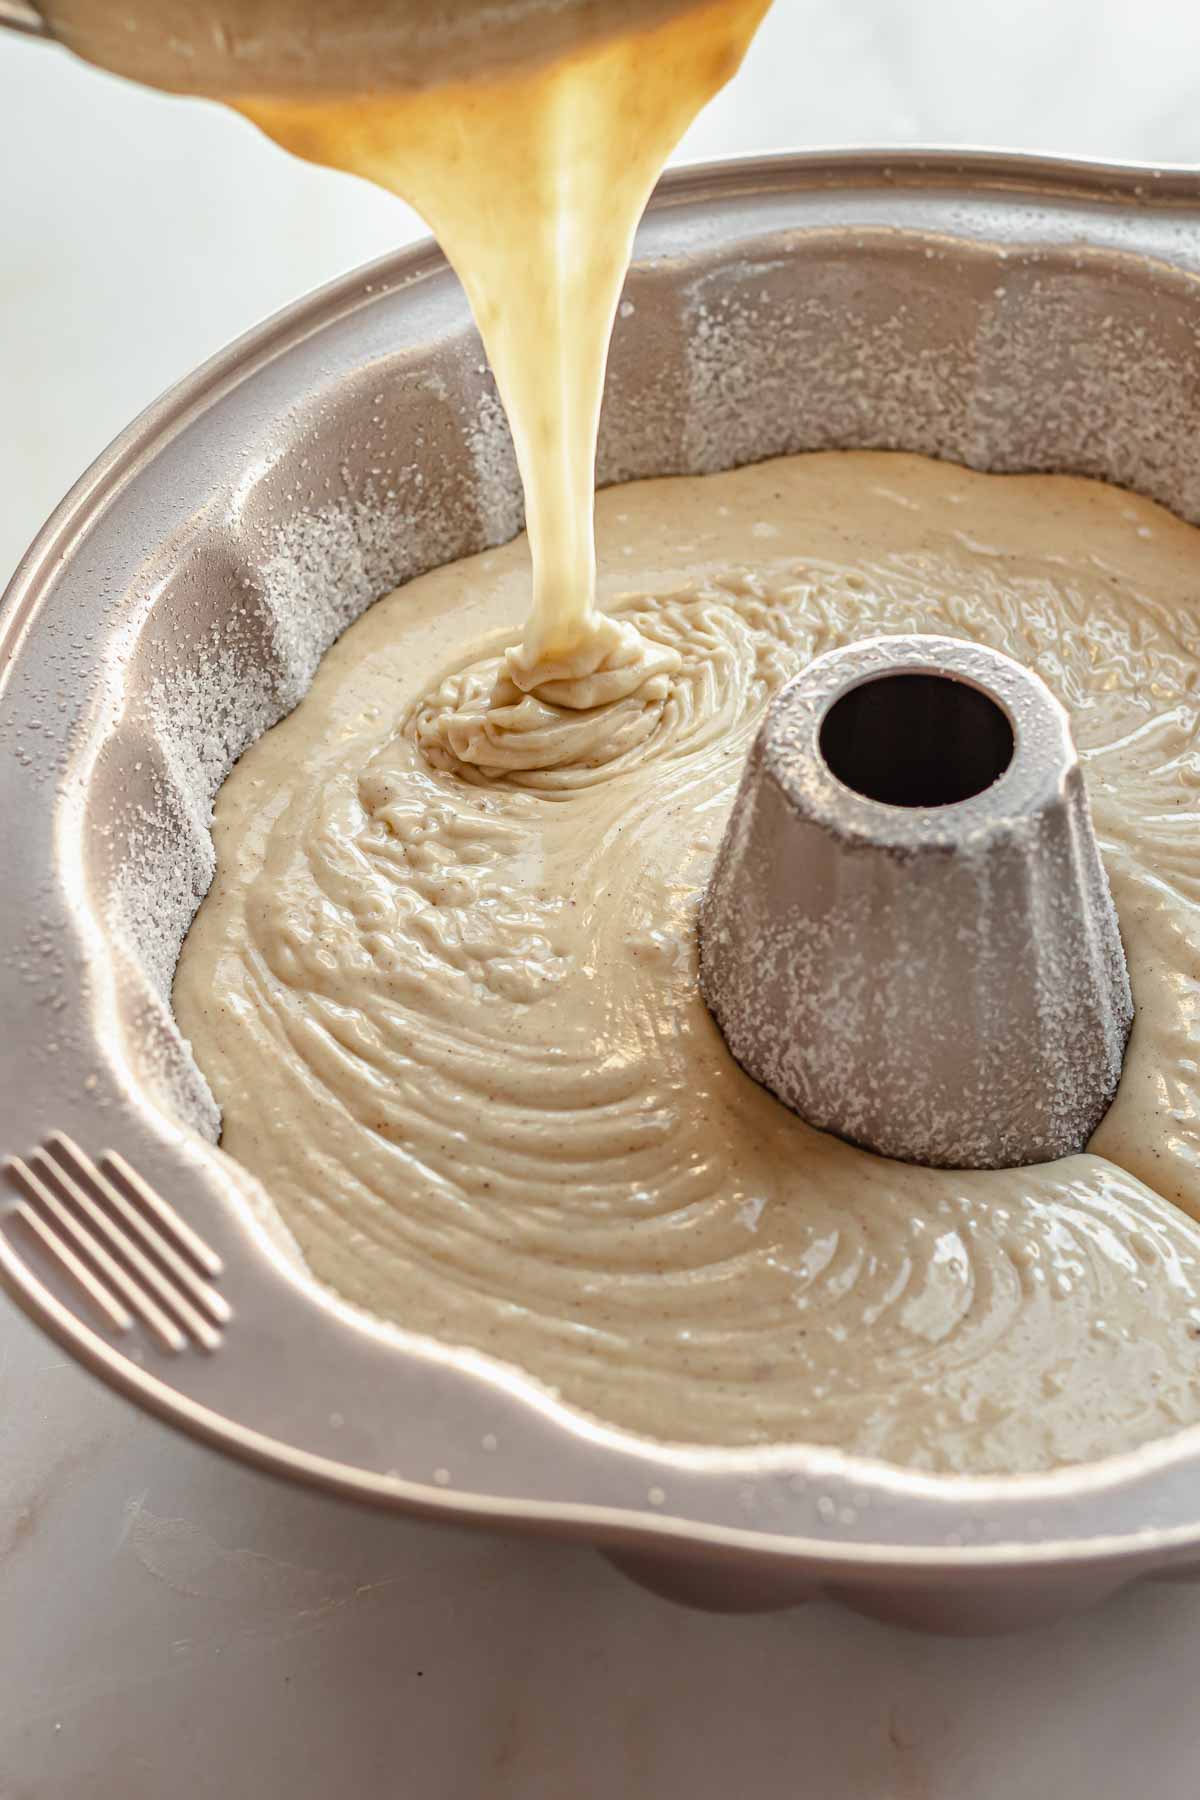 Eggnog cake batter being poured into a bundt pan.